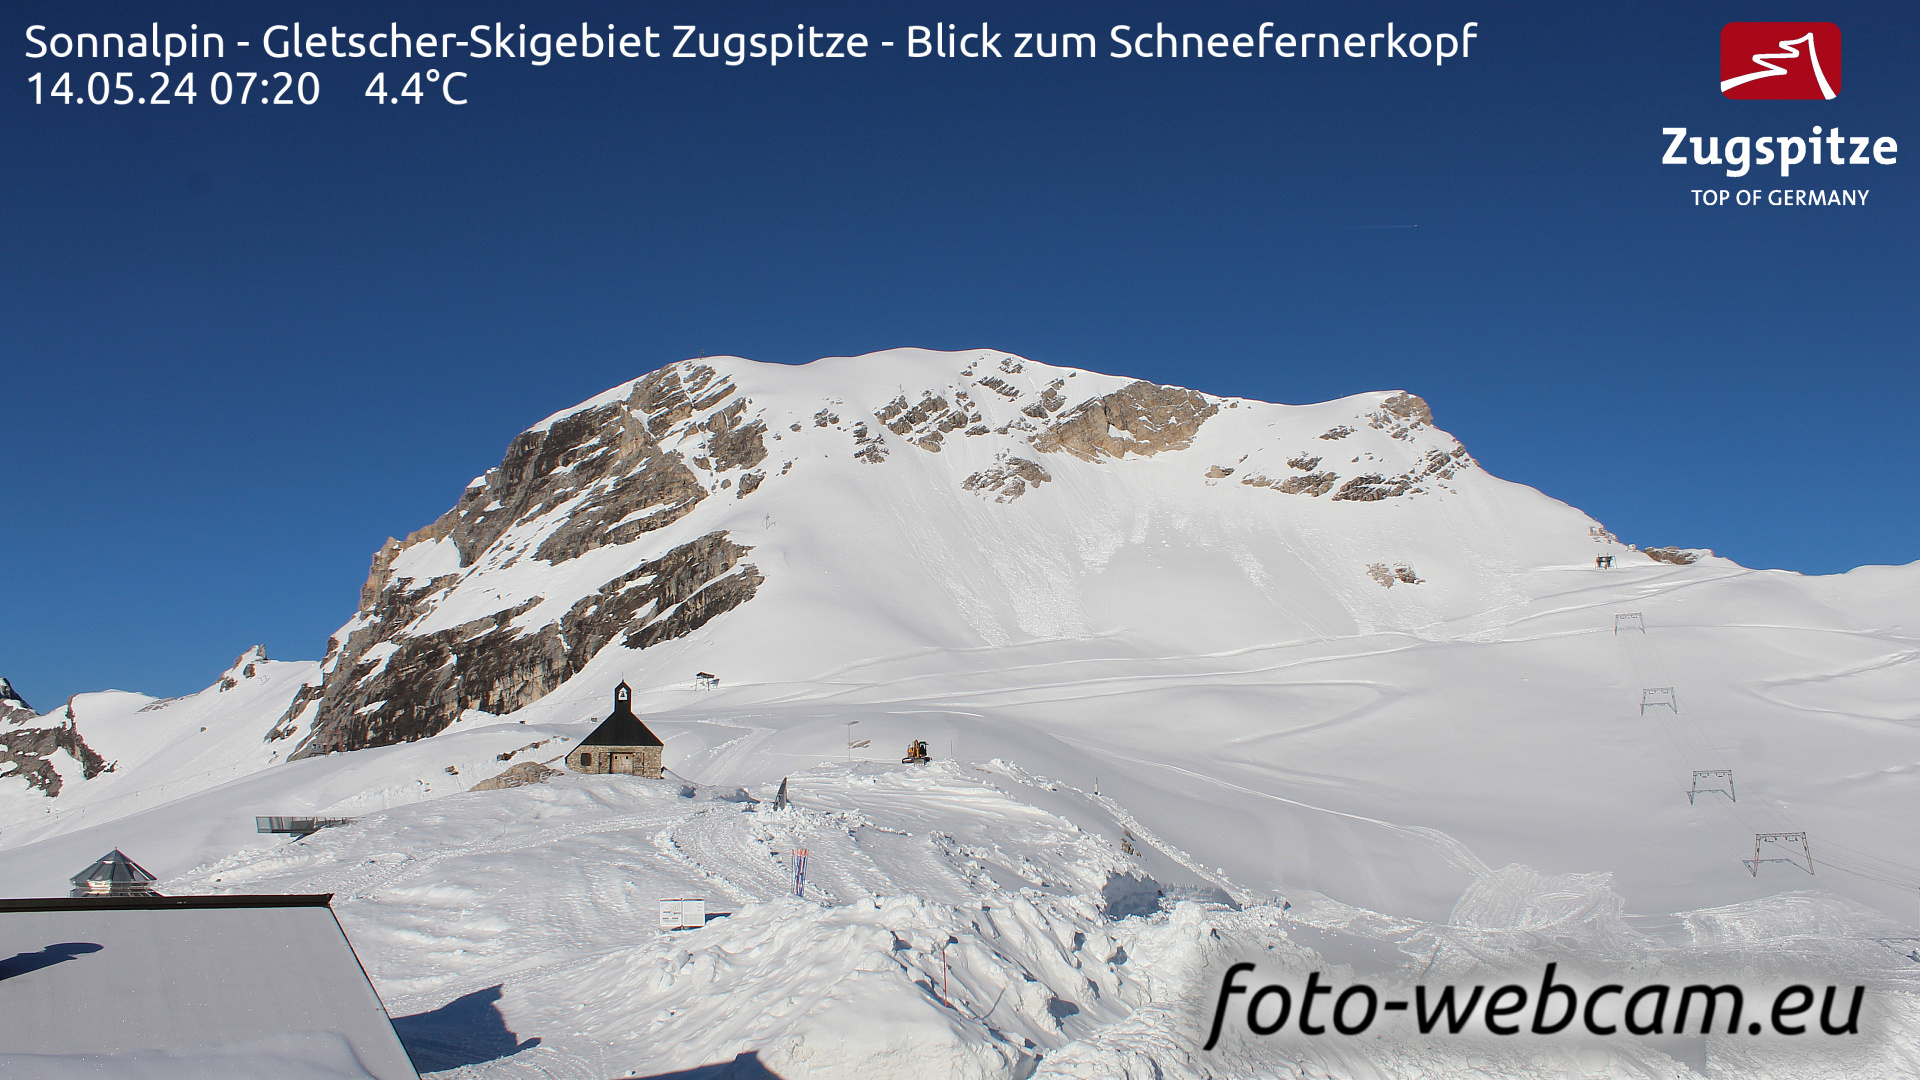 Zugspitze Wed. 07:24